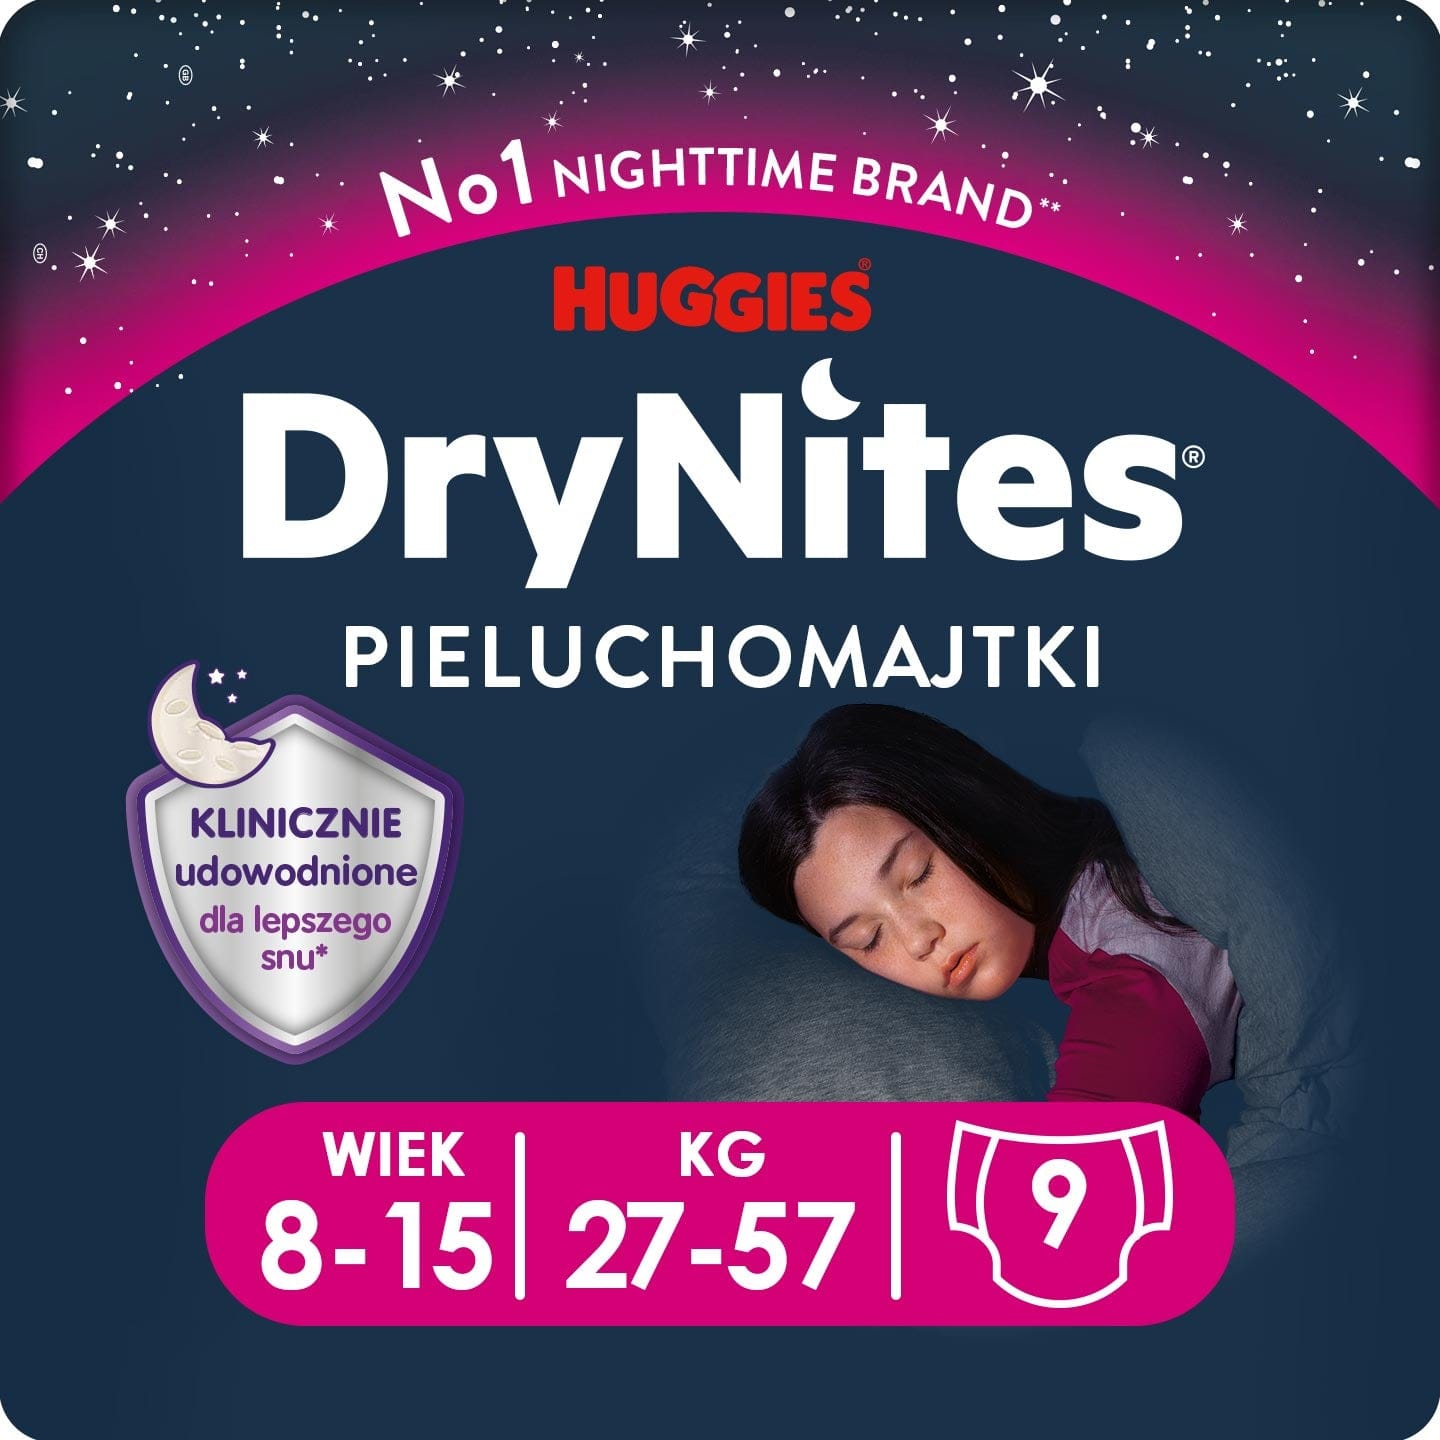 Produkt HUGGIES Pieluchomajtki Pieluchomajtki HUGGIES na noc dla dziewczynki DryNites Girl 8-15 lat (27-57kg) 9 szt 013828